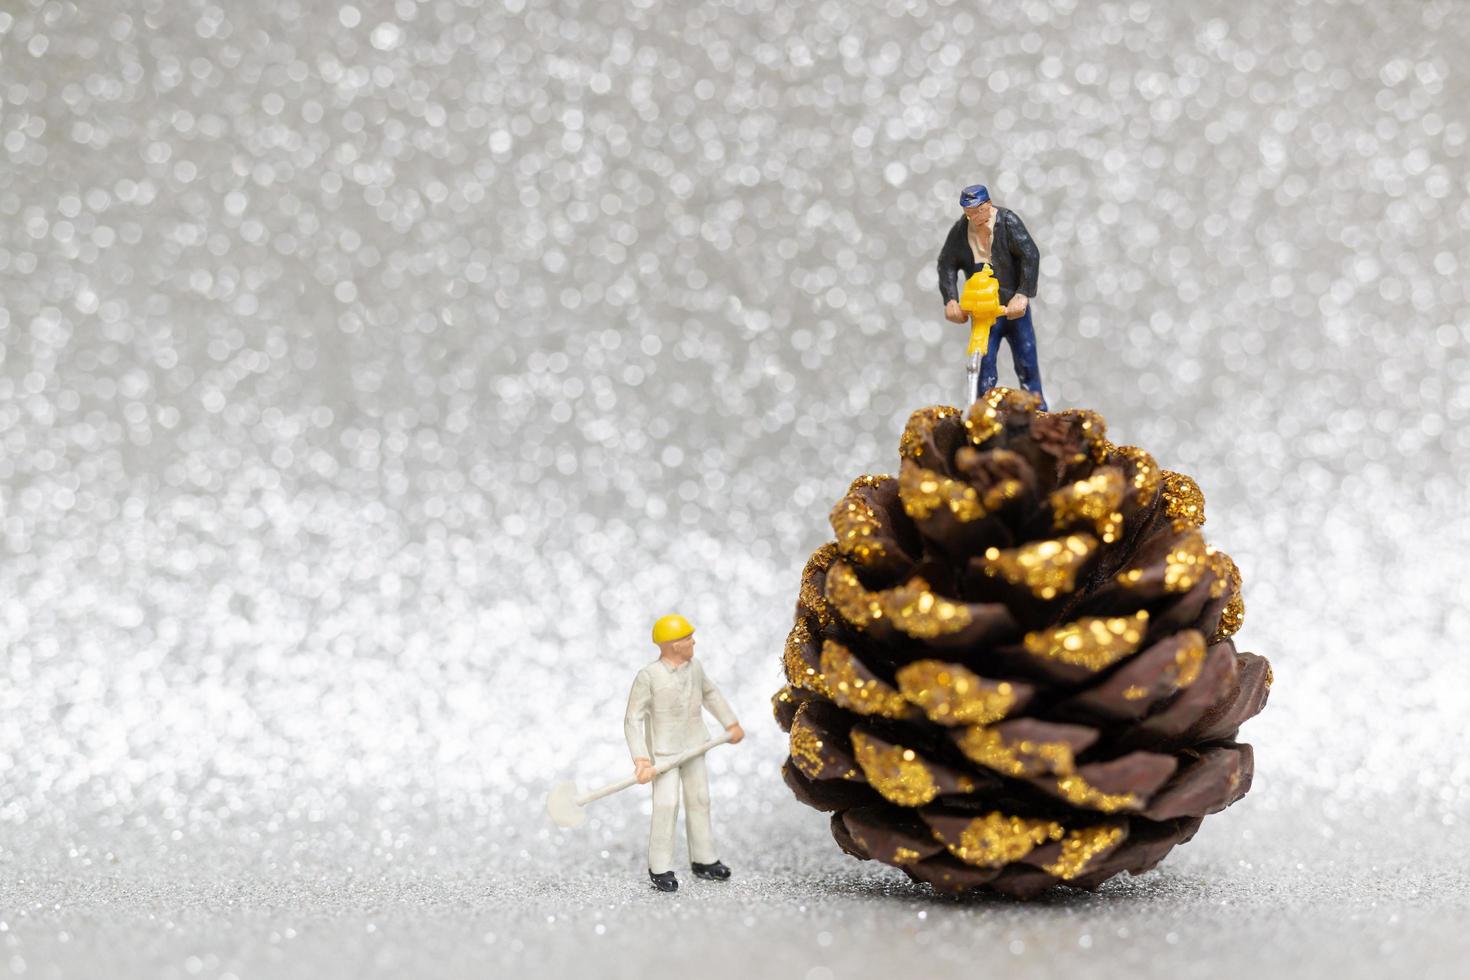 miniatyrarbetare förbereder en julkotte, jul och koncept för gott nytt år foto